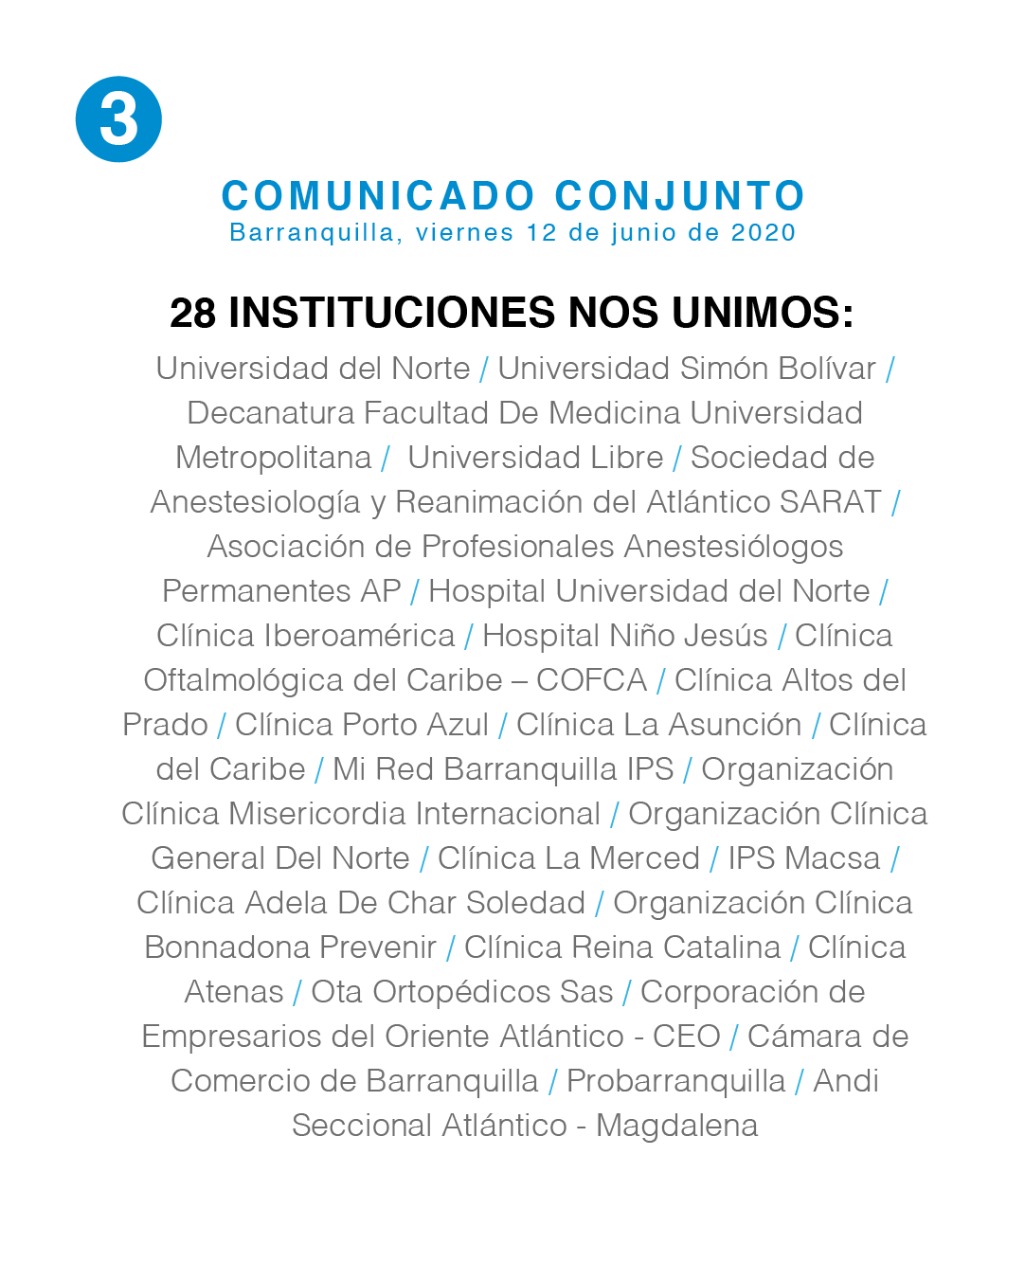 El comunicado de las 28 instituciones en el departamento del Atlántico.